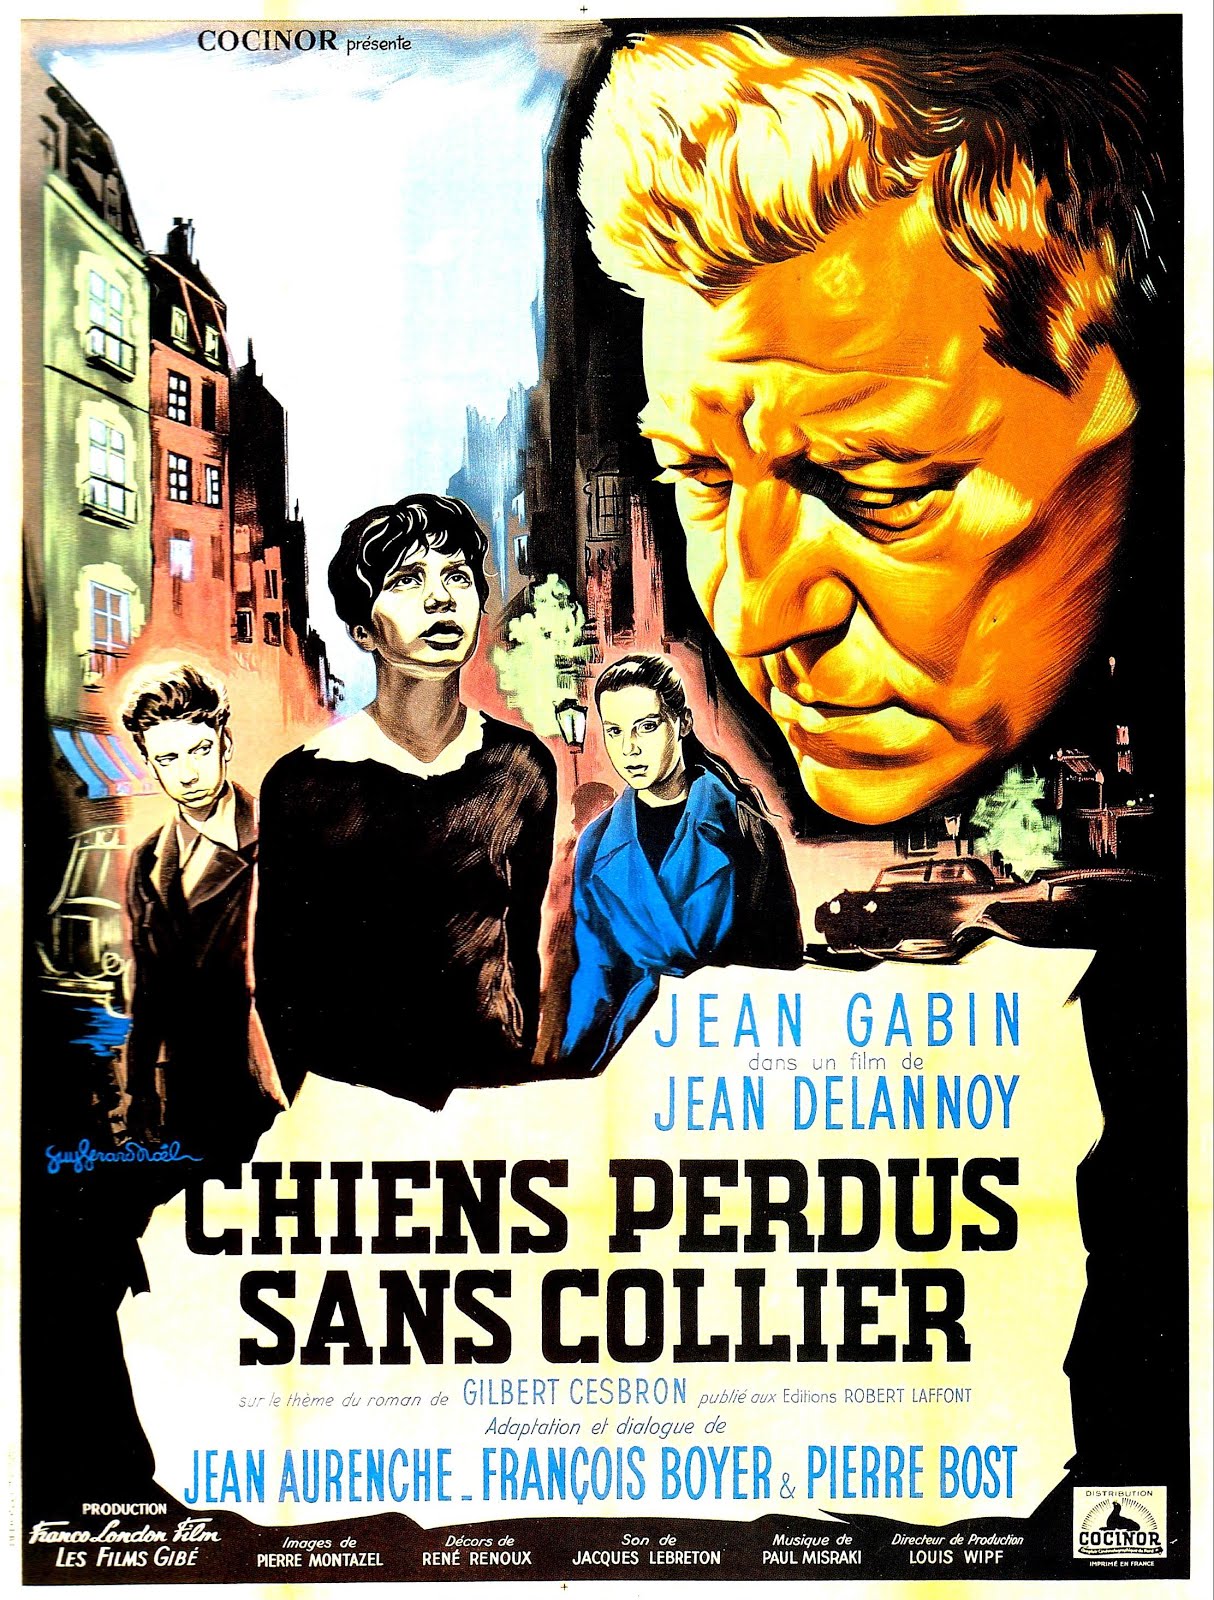 Chiens perdus sans collier (1955) Jean Delannoy - Chiens perdus sans collier